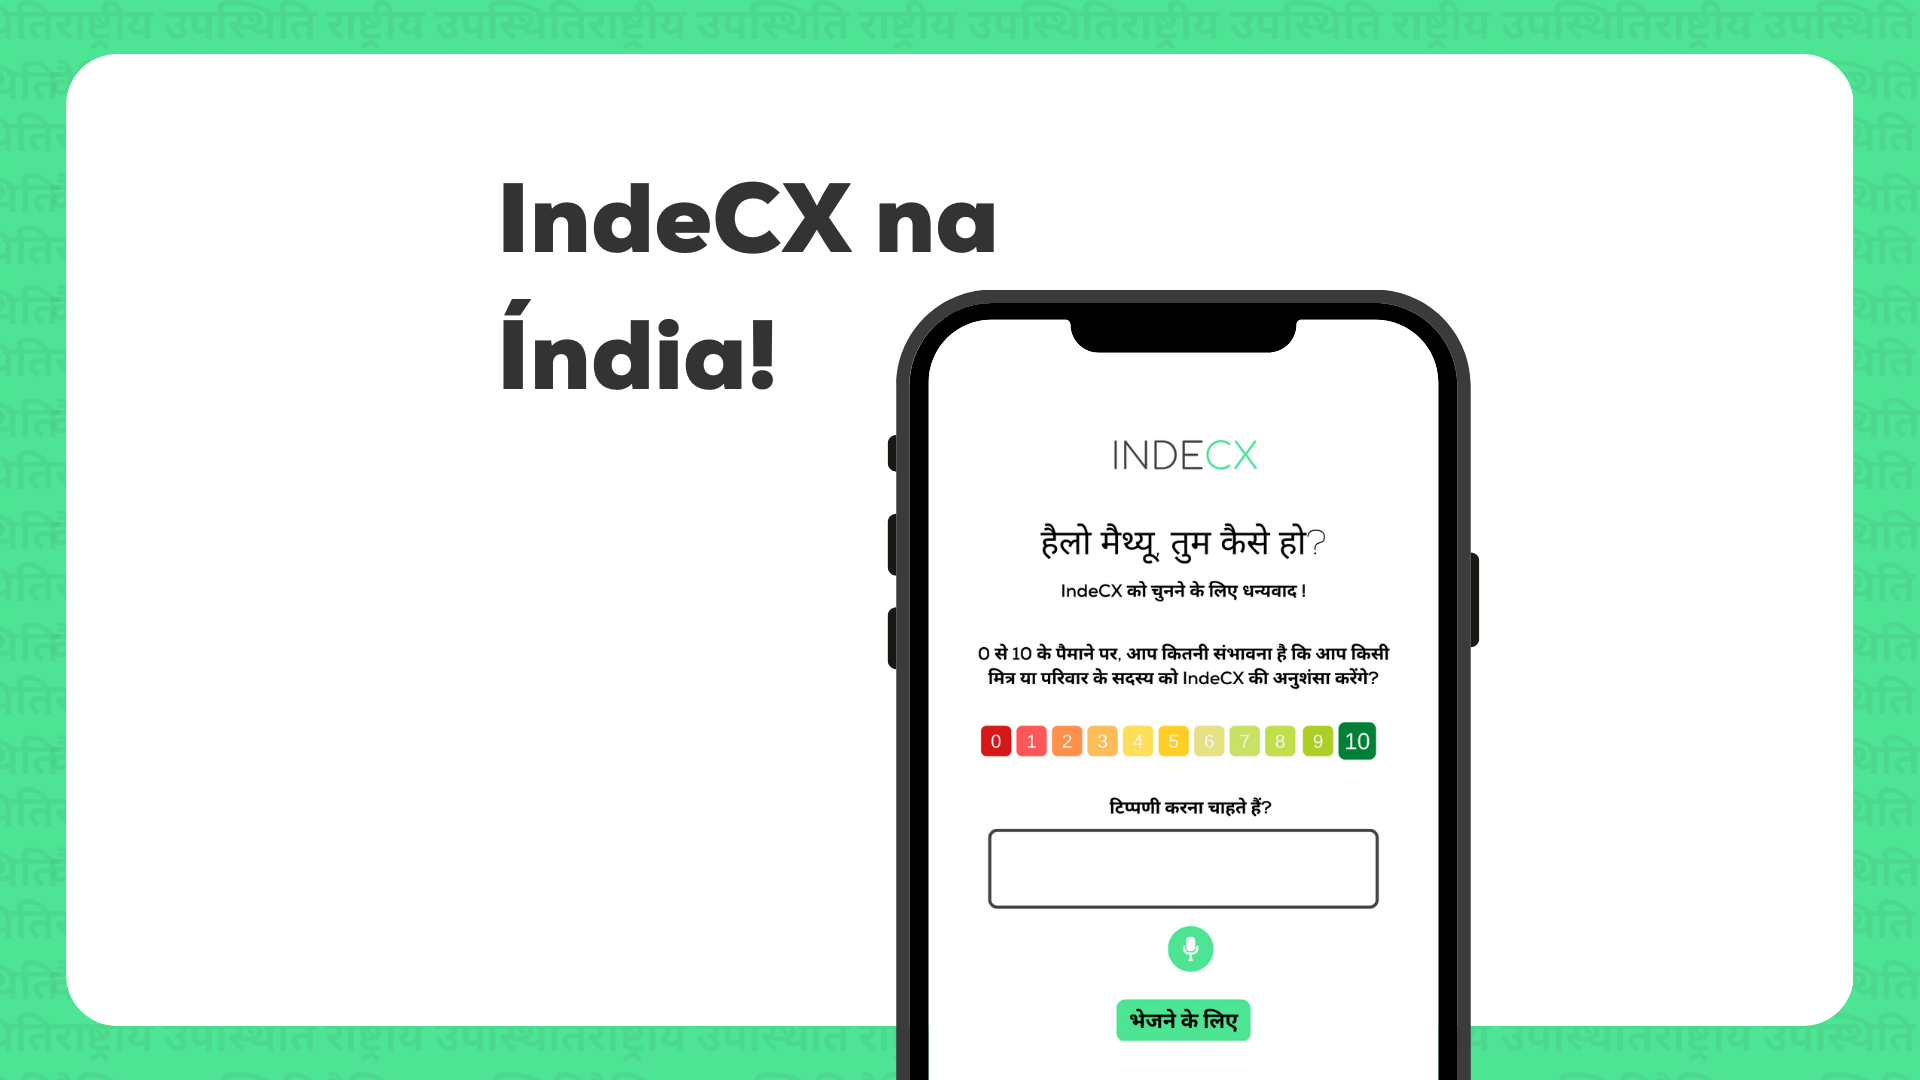 Com mais de 14 anos de experiência no mercado de monitoramento de clientes, oferecendo soluções para ajudar as empresas a entender e melhorar o cliente e seu mercado a IndeCX chega à Índia